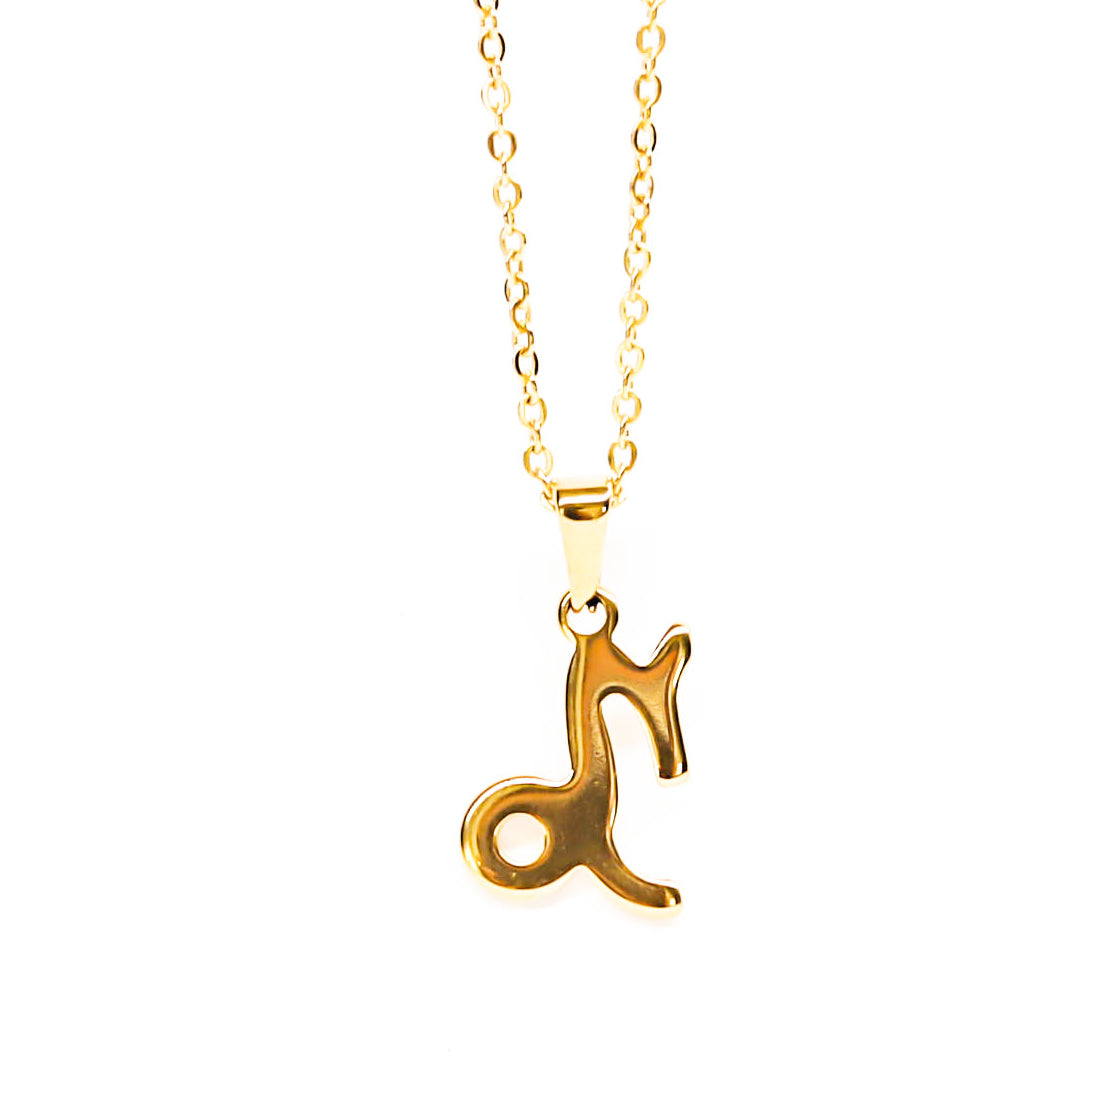 Colgante de acero inoxidable dorado con forma del signo del zodiaco Capricornio de 20mm